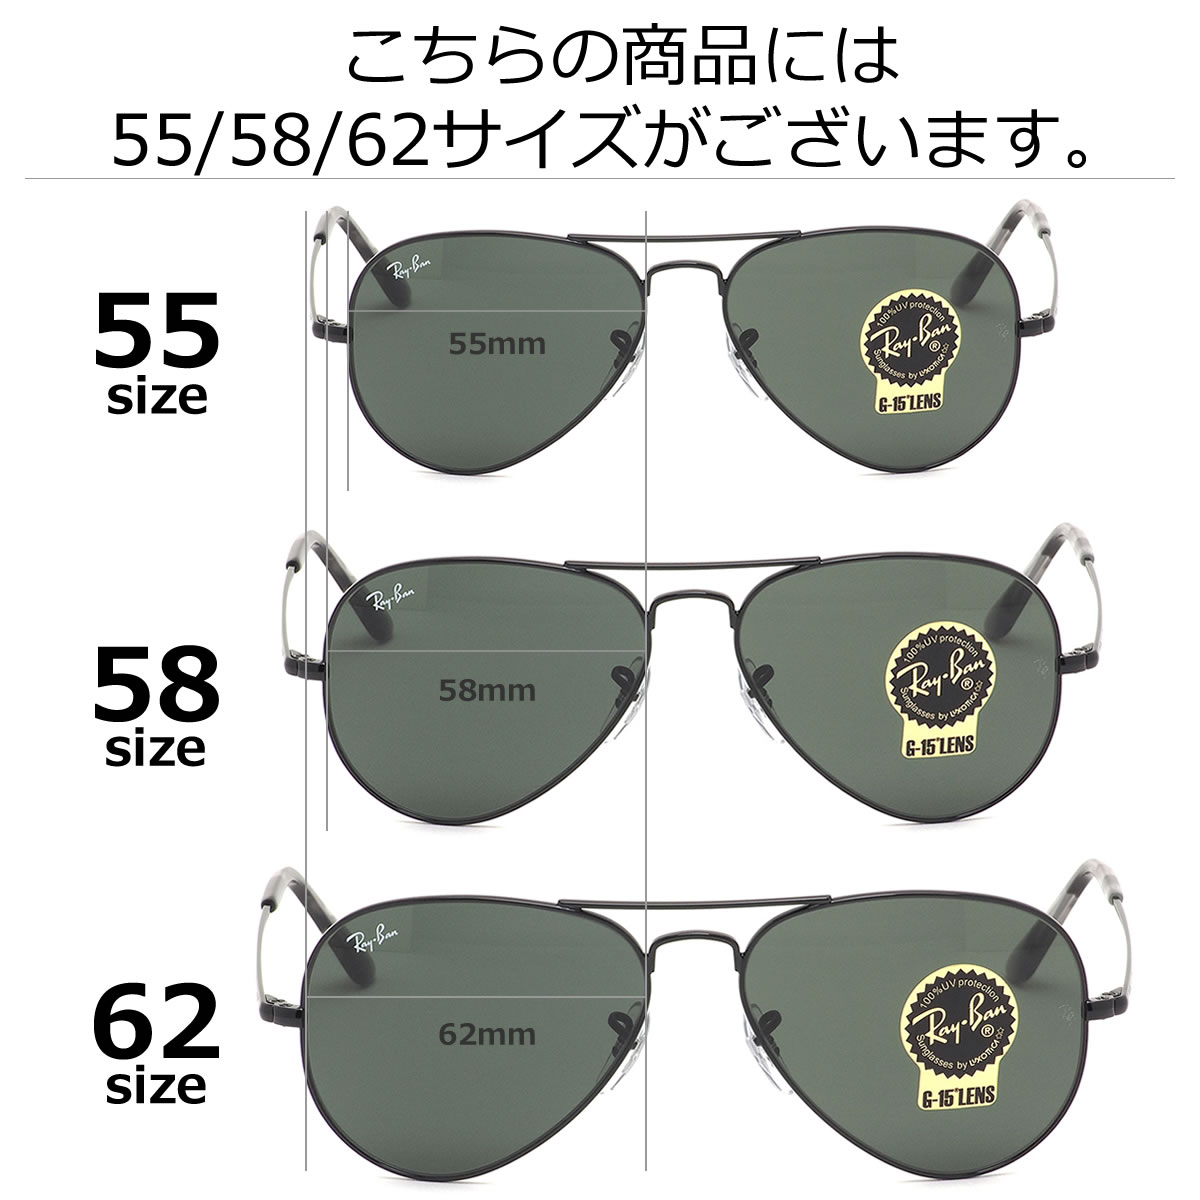 55mm vs 58mm sunglasses